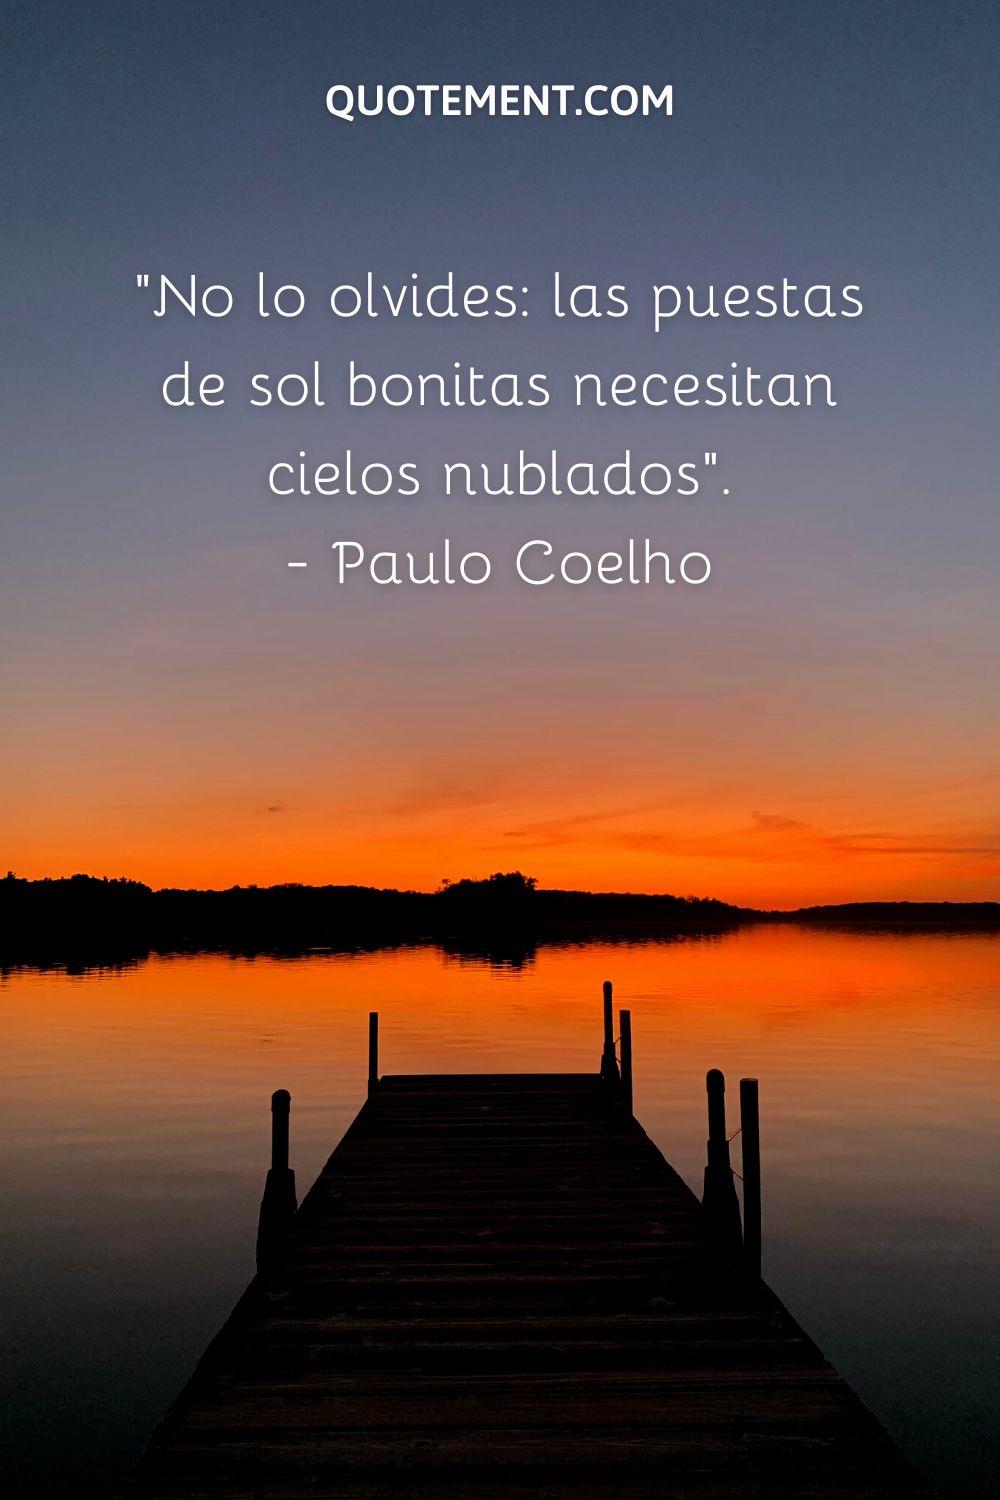 "No olvides que los bellos atardeceres necesitan cielos nublados". - Paulo Coelho